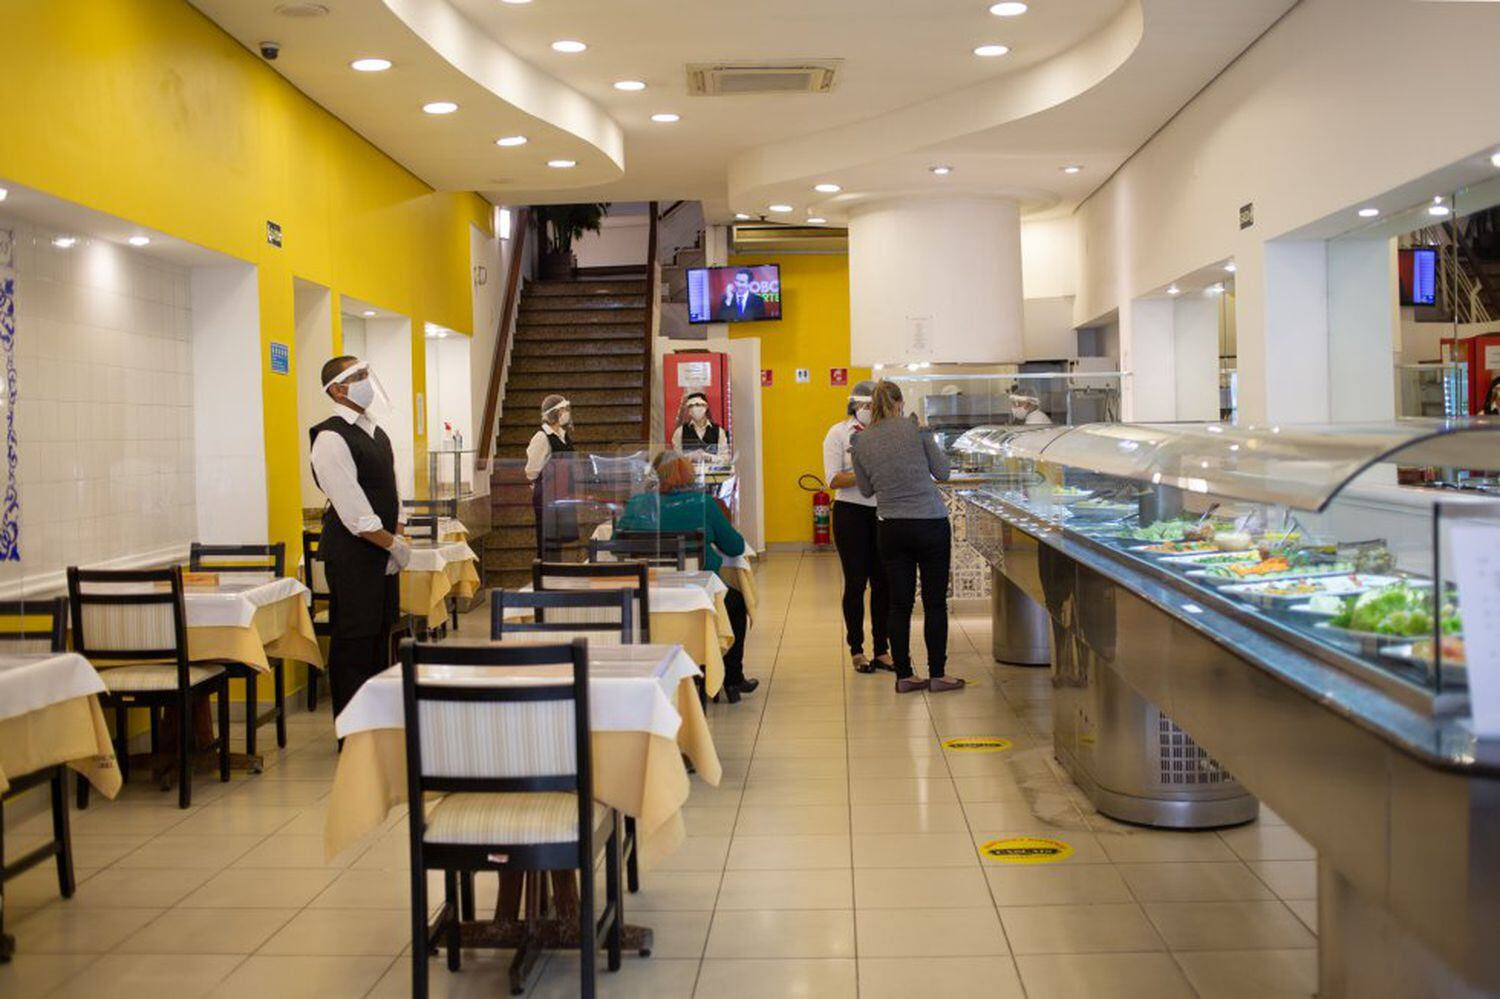 En el restaurante Sintra, en el centro de São Paulo, el propietario optó por poner mamparas entre las mesas.